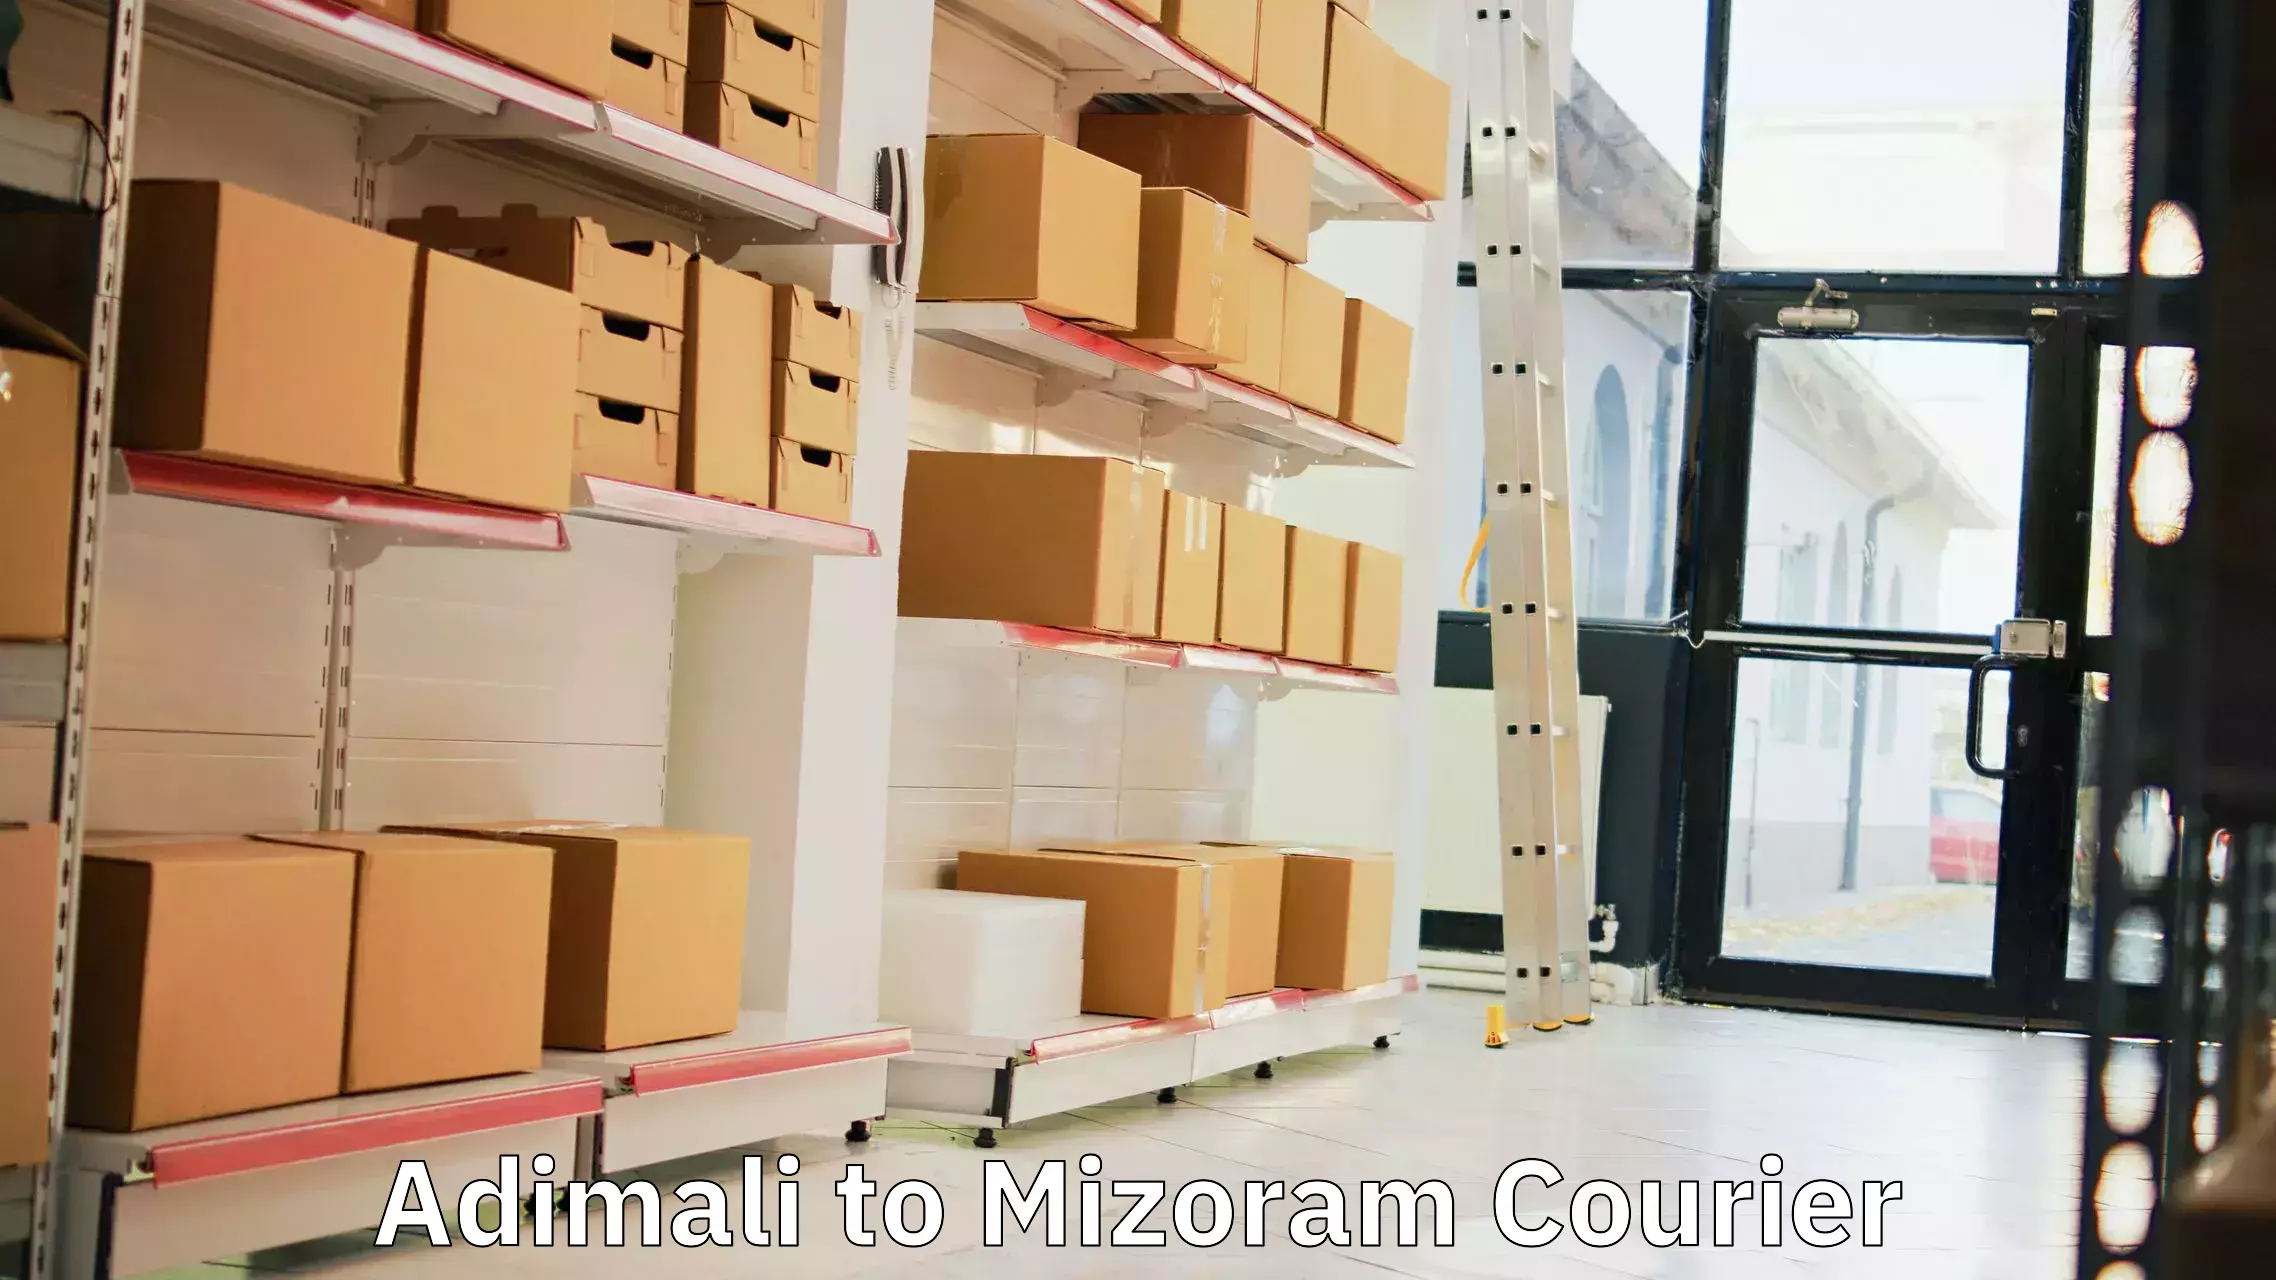 Digital courier platforms Adimali to Mizoram